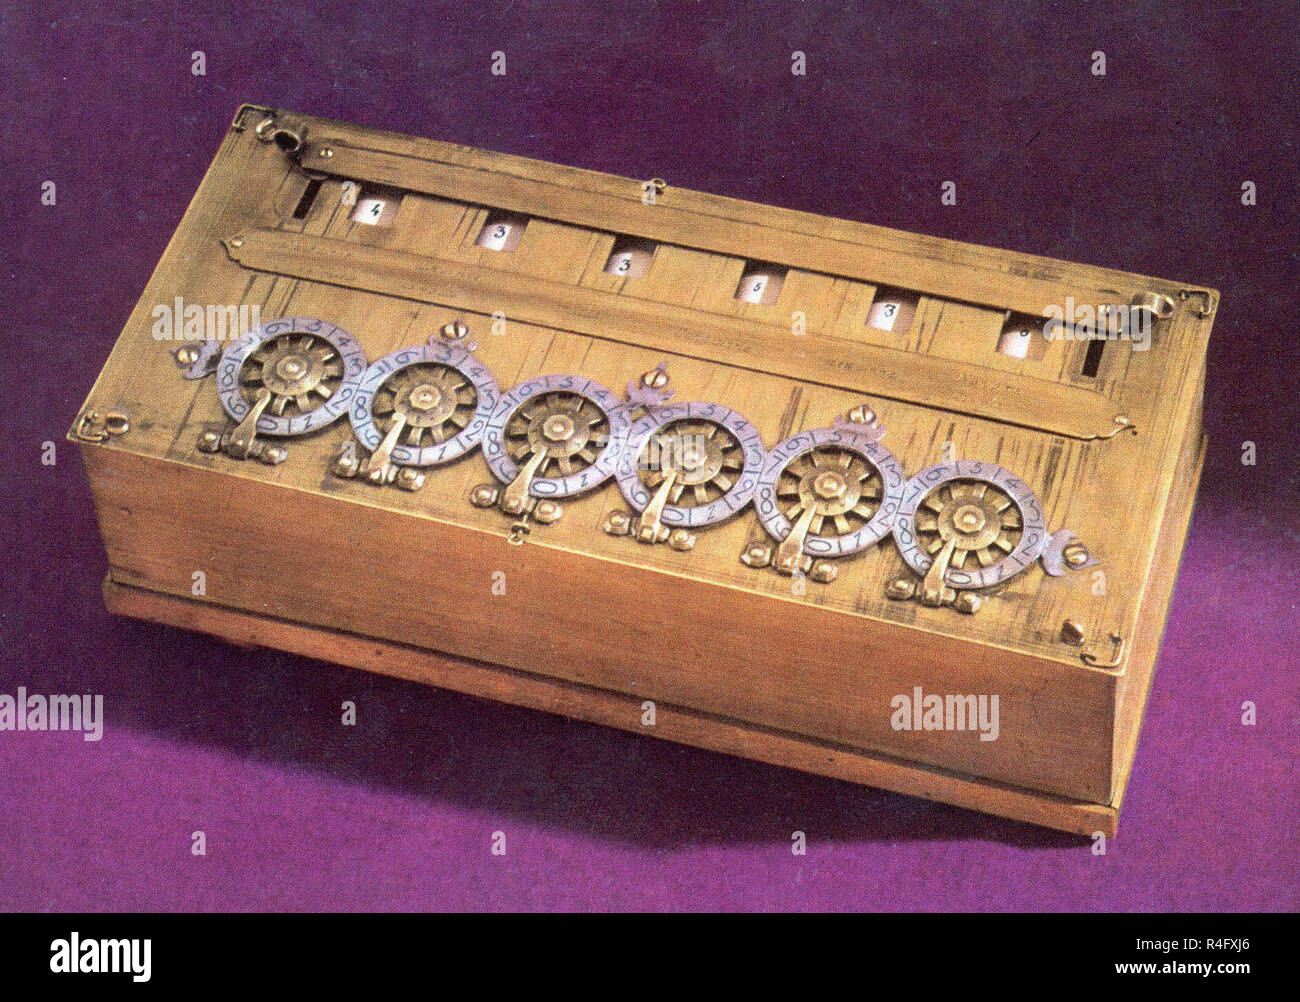 Calculadora PASCALINA inventada por Blaise Pascal en 1642. Ubicación:  Colección privada Fotografía de stock - Alamy